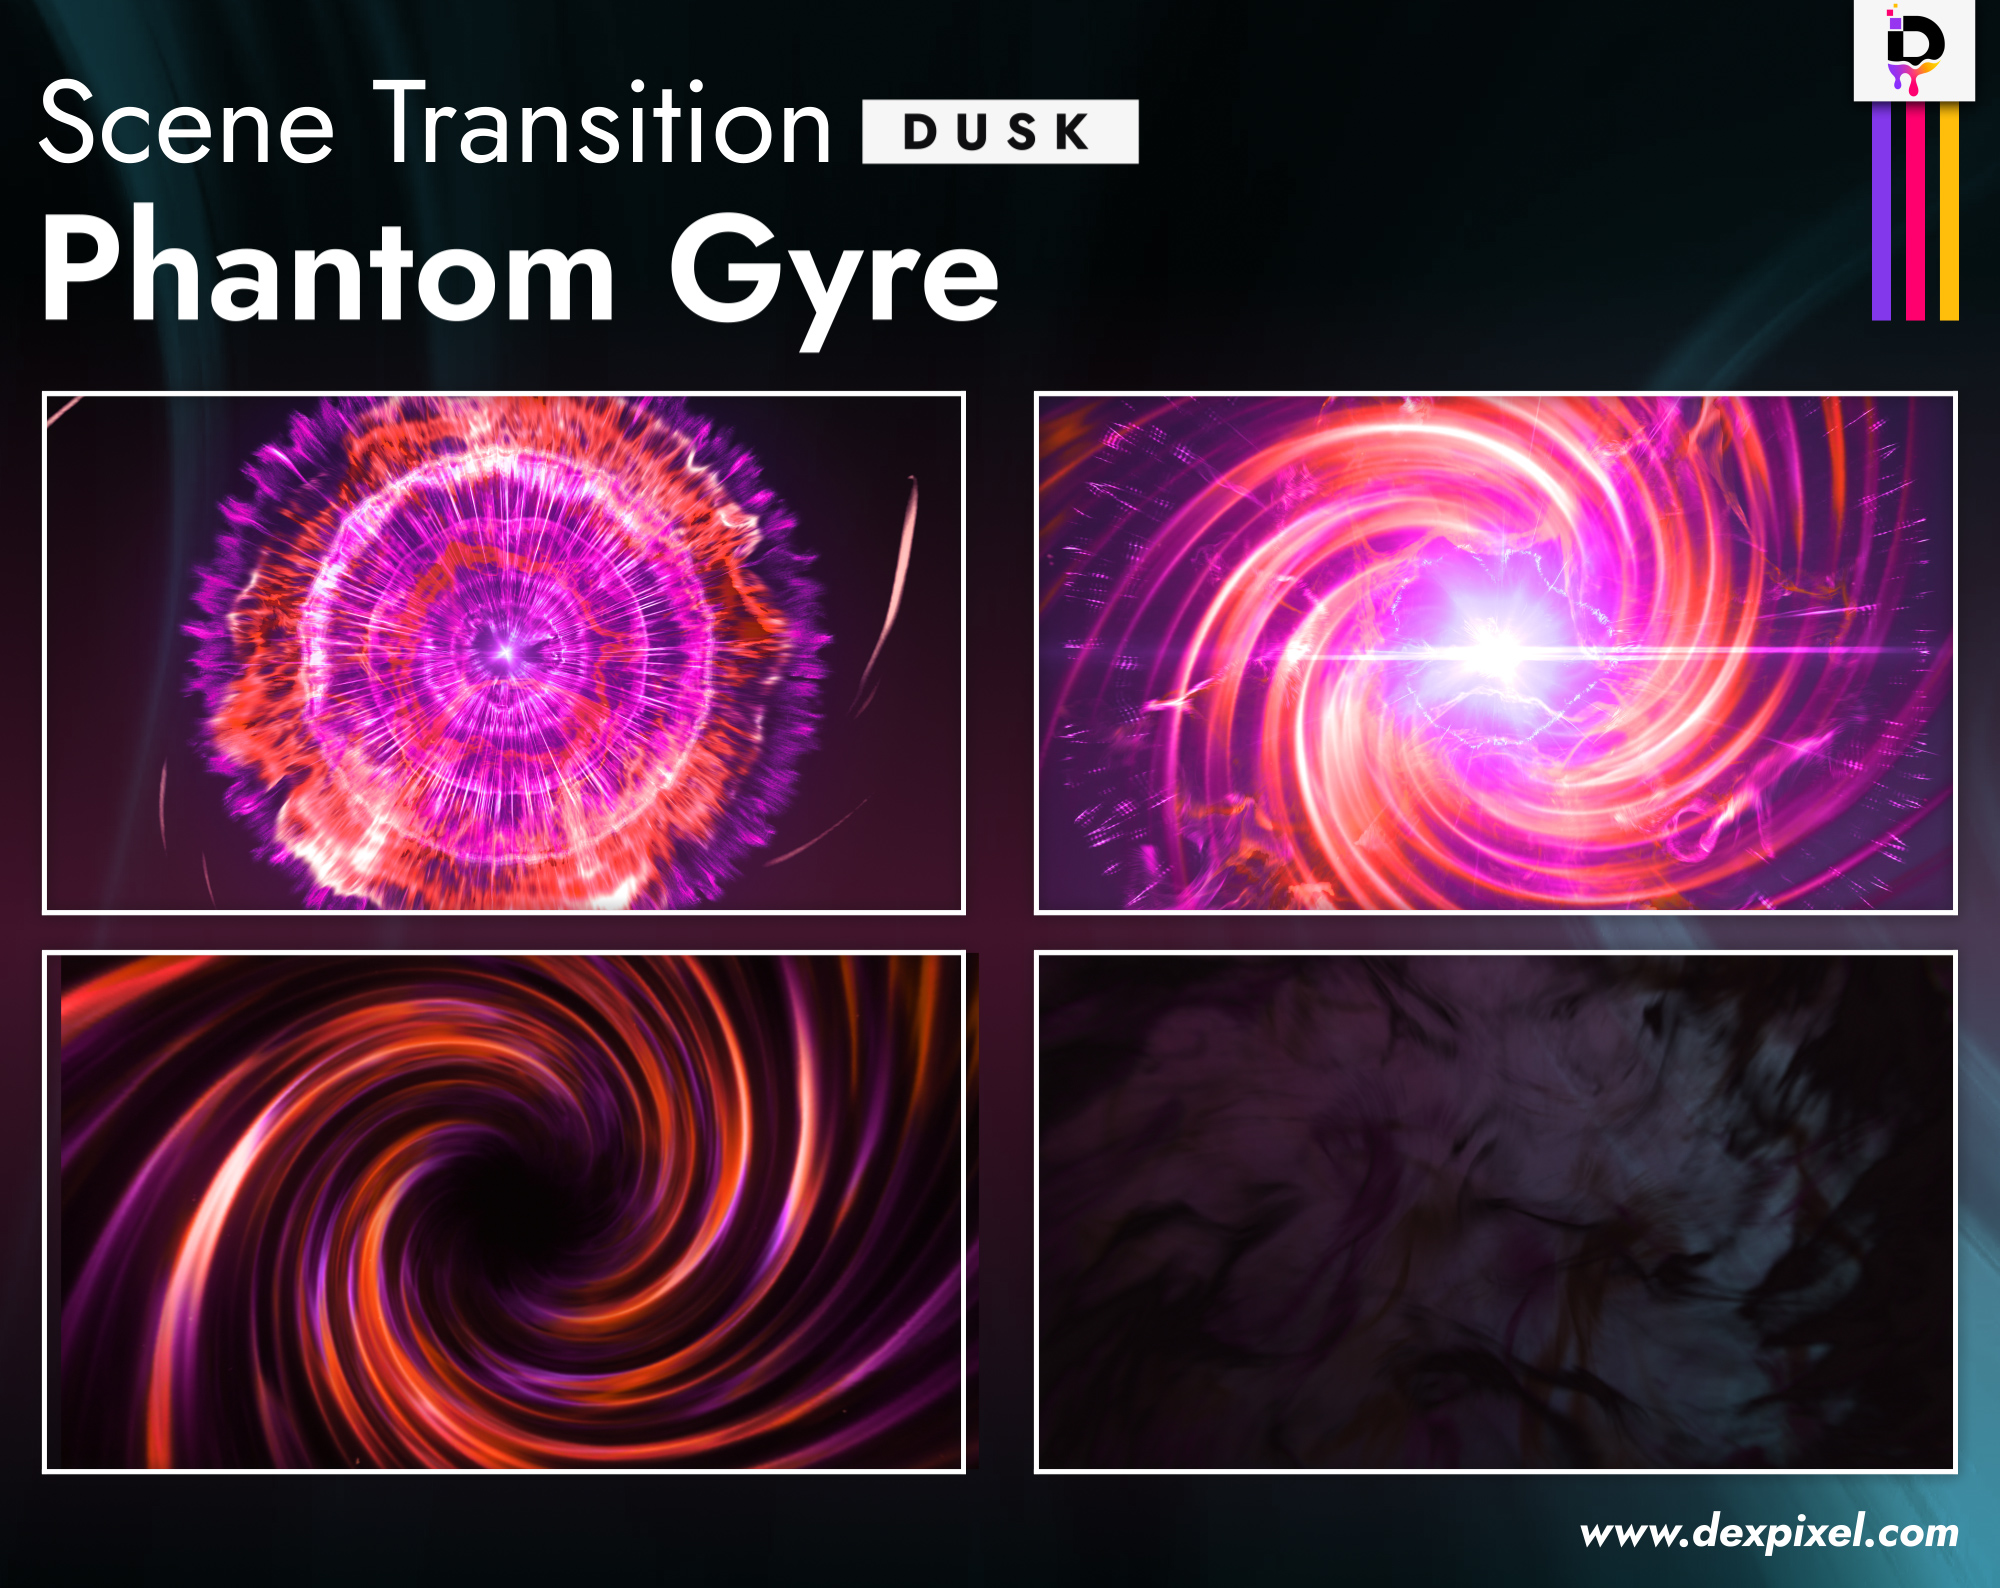 Scene Transition Dexpixel Thumbnail Phantom Gyre Dusk